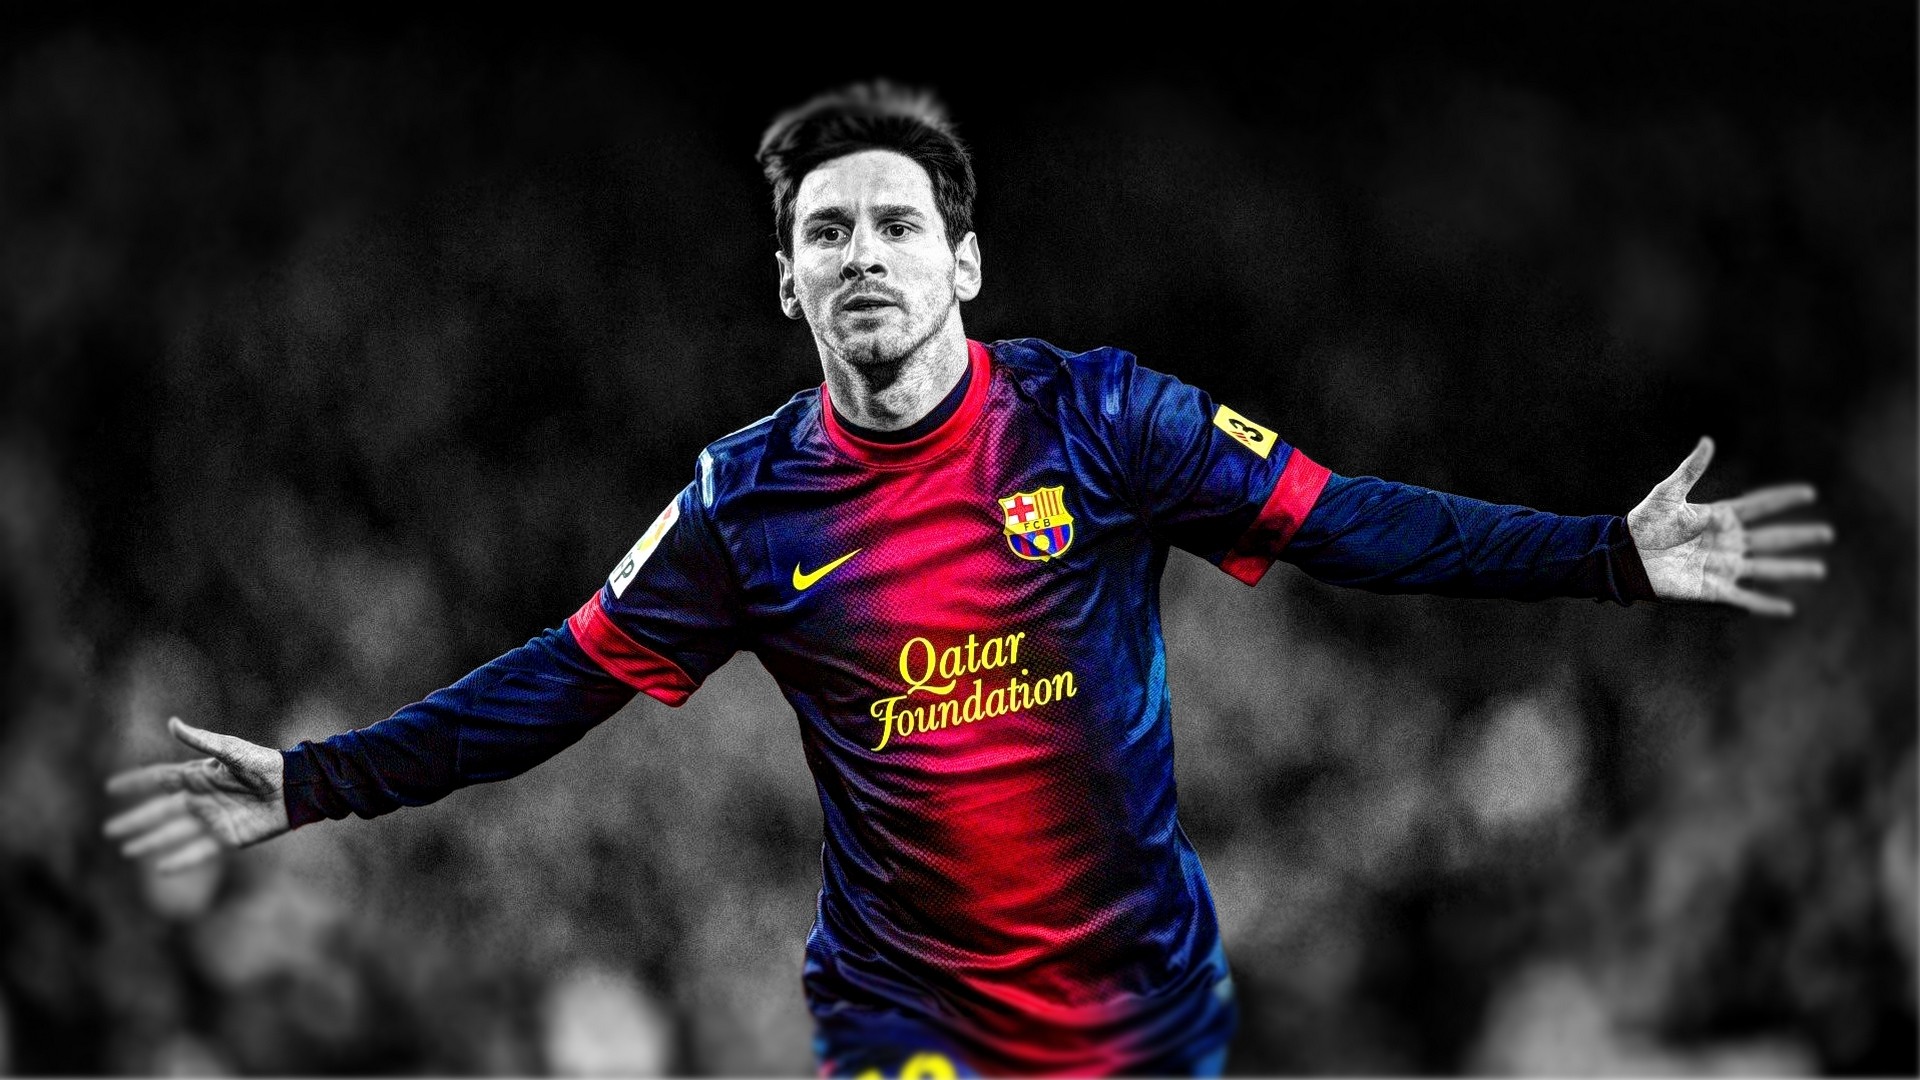 Messi 2K wallpaper: Chỉ với một cái nhìn là đủ để người hâm mộ của Messi cảm thấy mãn nhãn trước những bức ảnh 2K sắc nét. Sự hiện diện của Messi tại màn hình của bạn như một lời đề nghị rằng bạn cũng đang tận hưởng niềm yêu thương và tuyệt vời của ông.